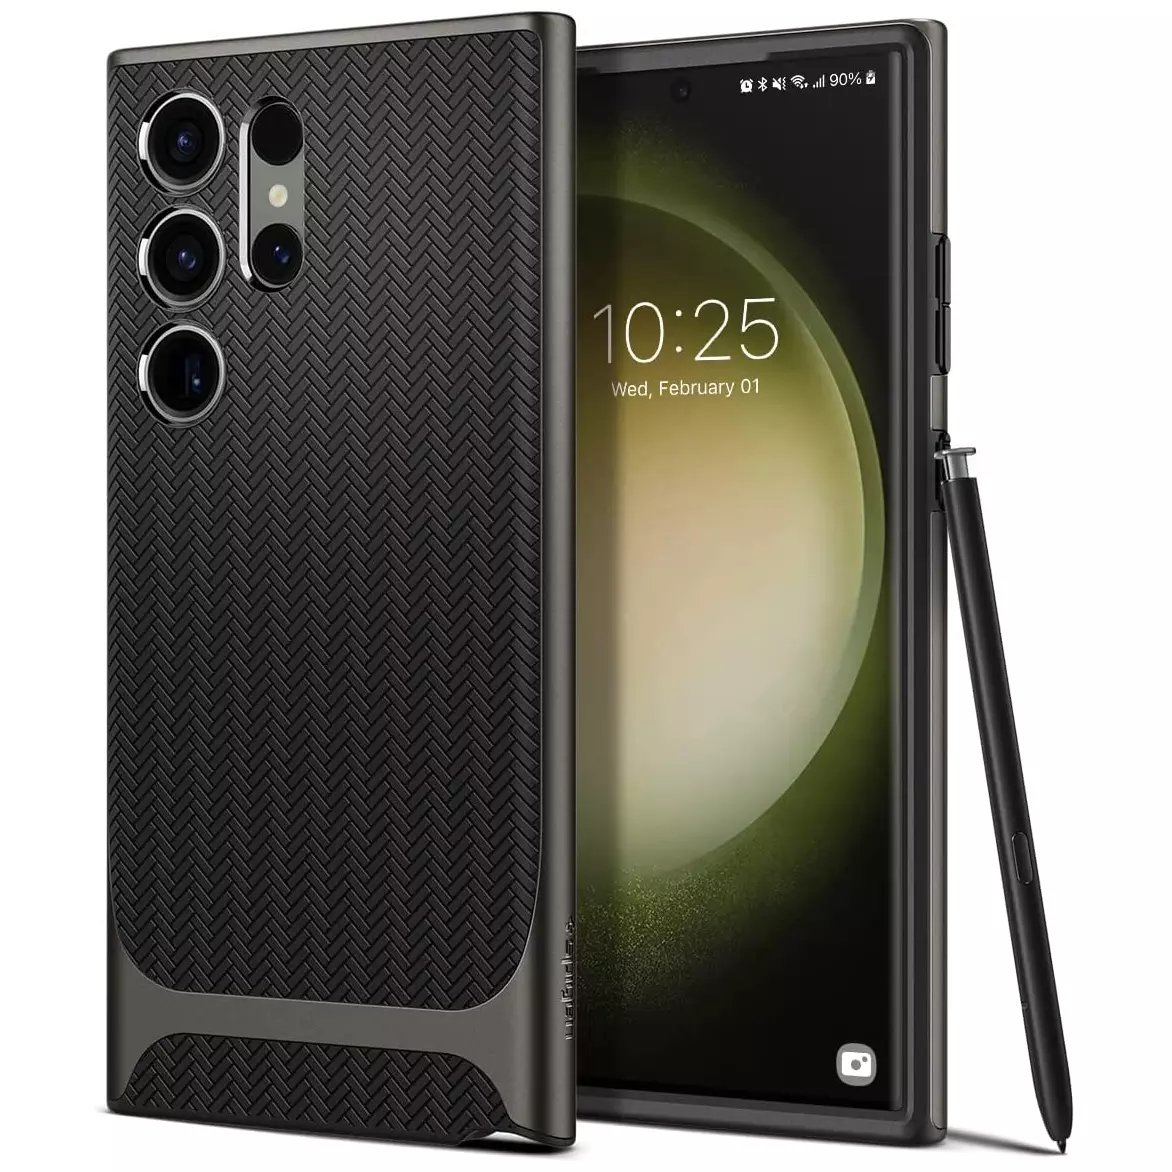 Samsung Galaxy S23 Ultra Neo Hybrid Case By Spigen - Xcessories Hub